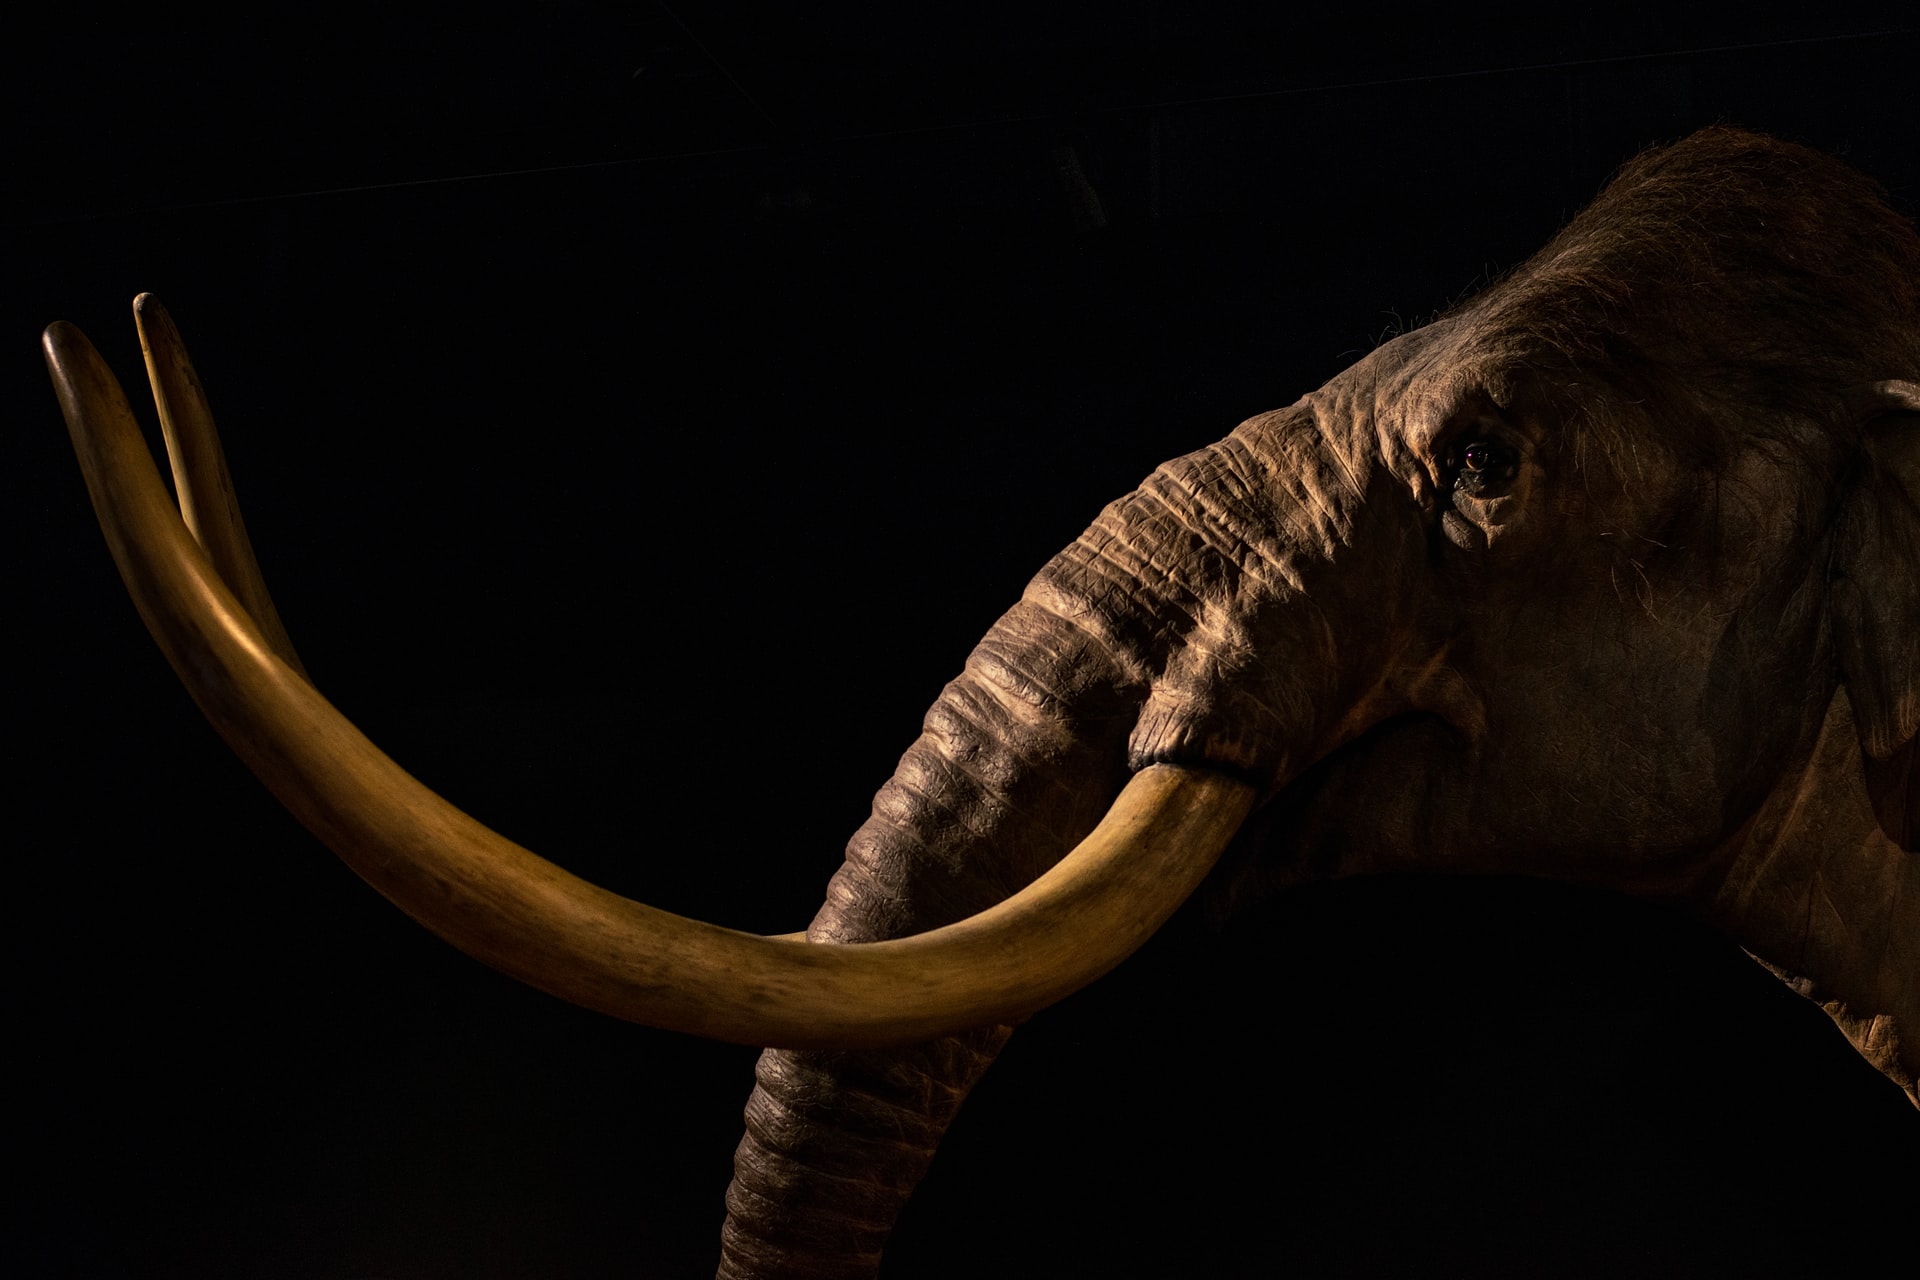 Extinção dos mamutes decorre de mudança climática, e não de humanos caçadores, diz estudo